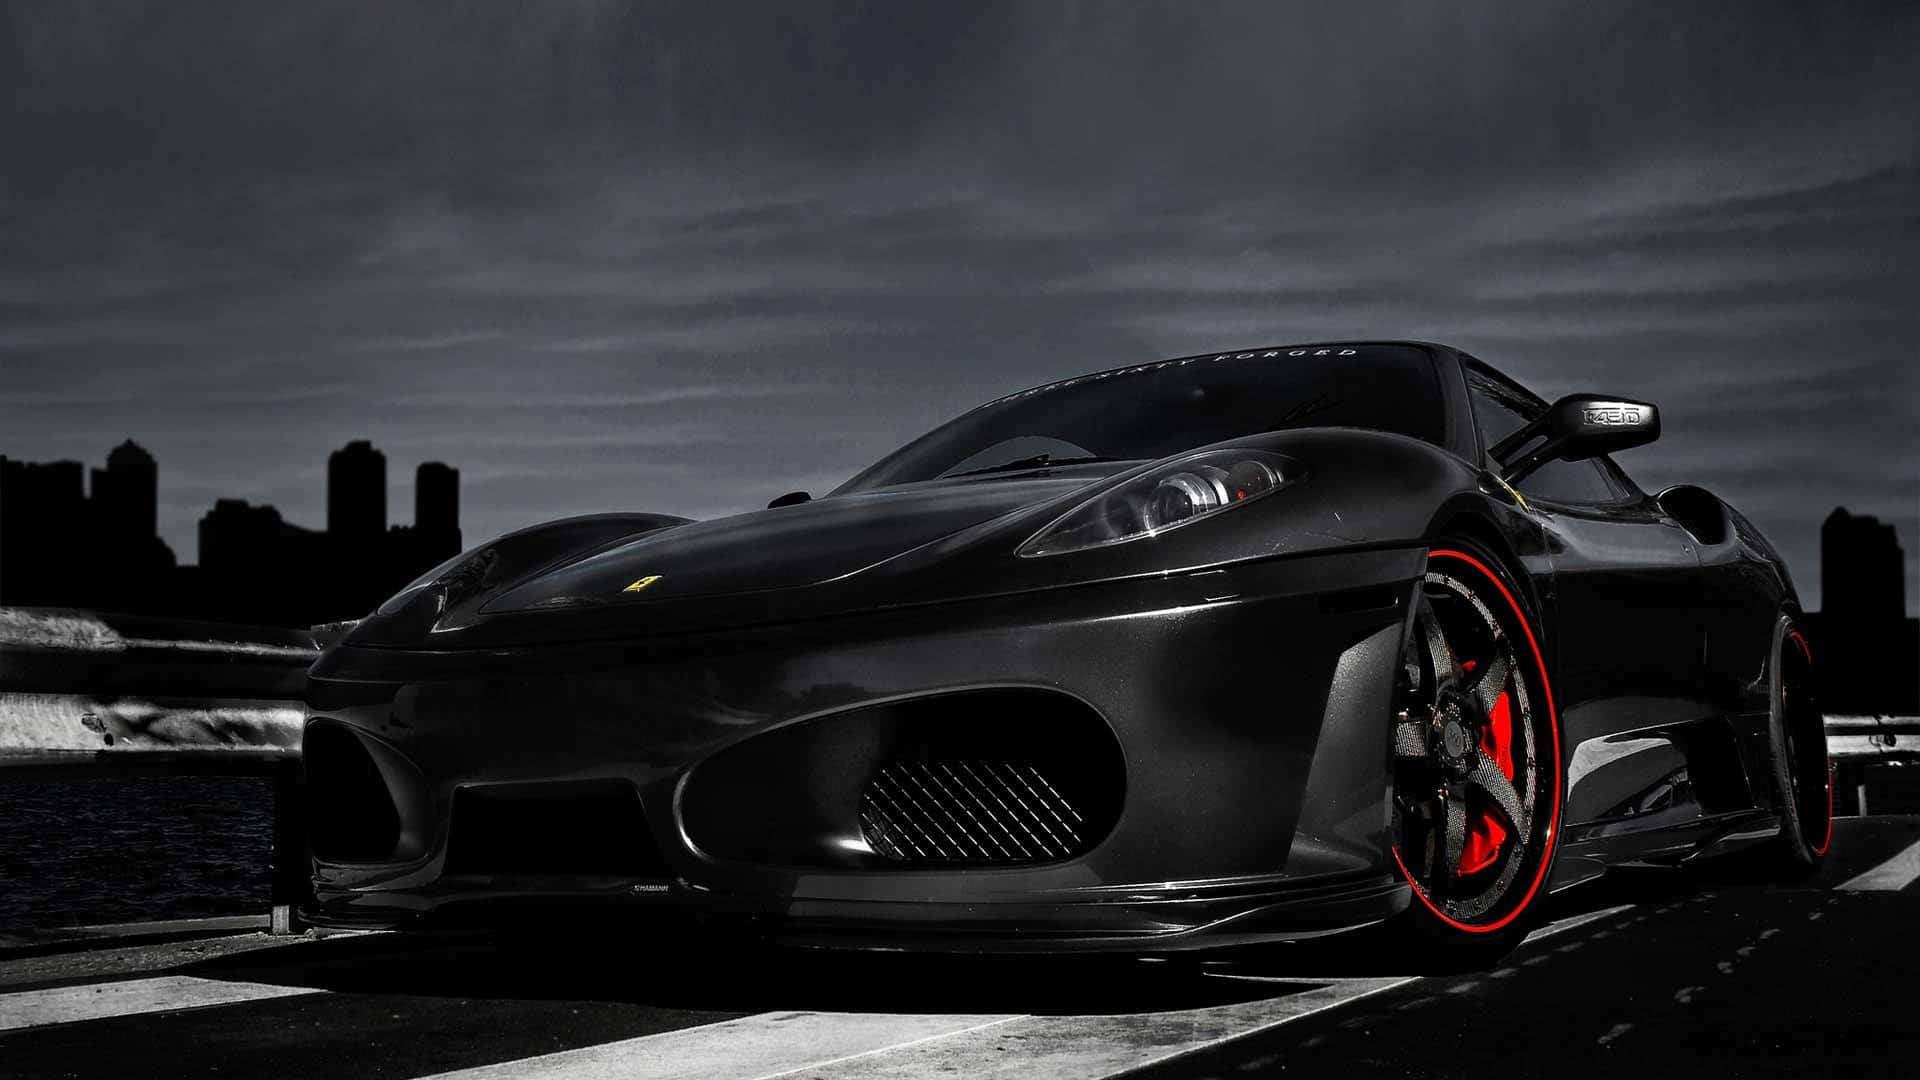 Bildsteigere Deinen Adrenalinspiegel Mit Einem Coolen Ferrari-auto Wallpaper